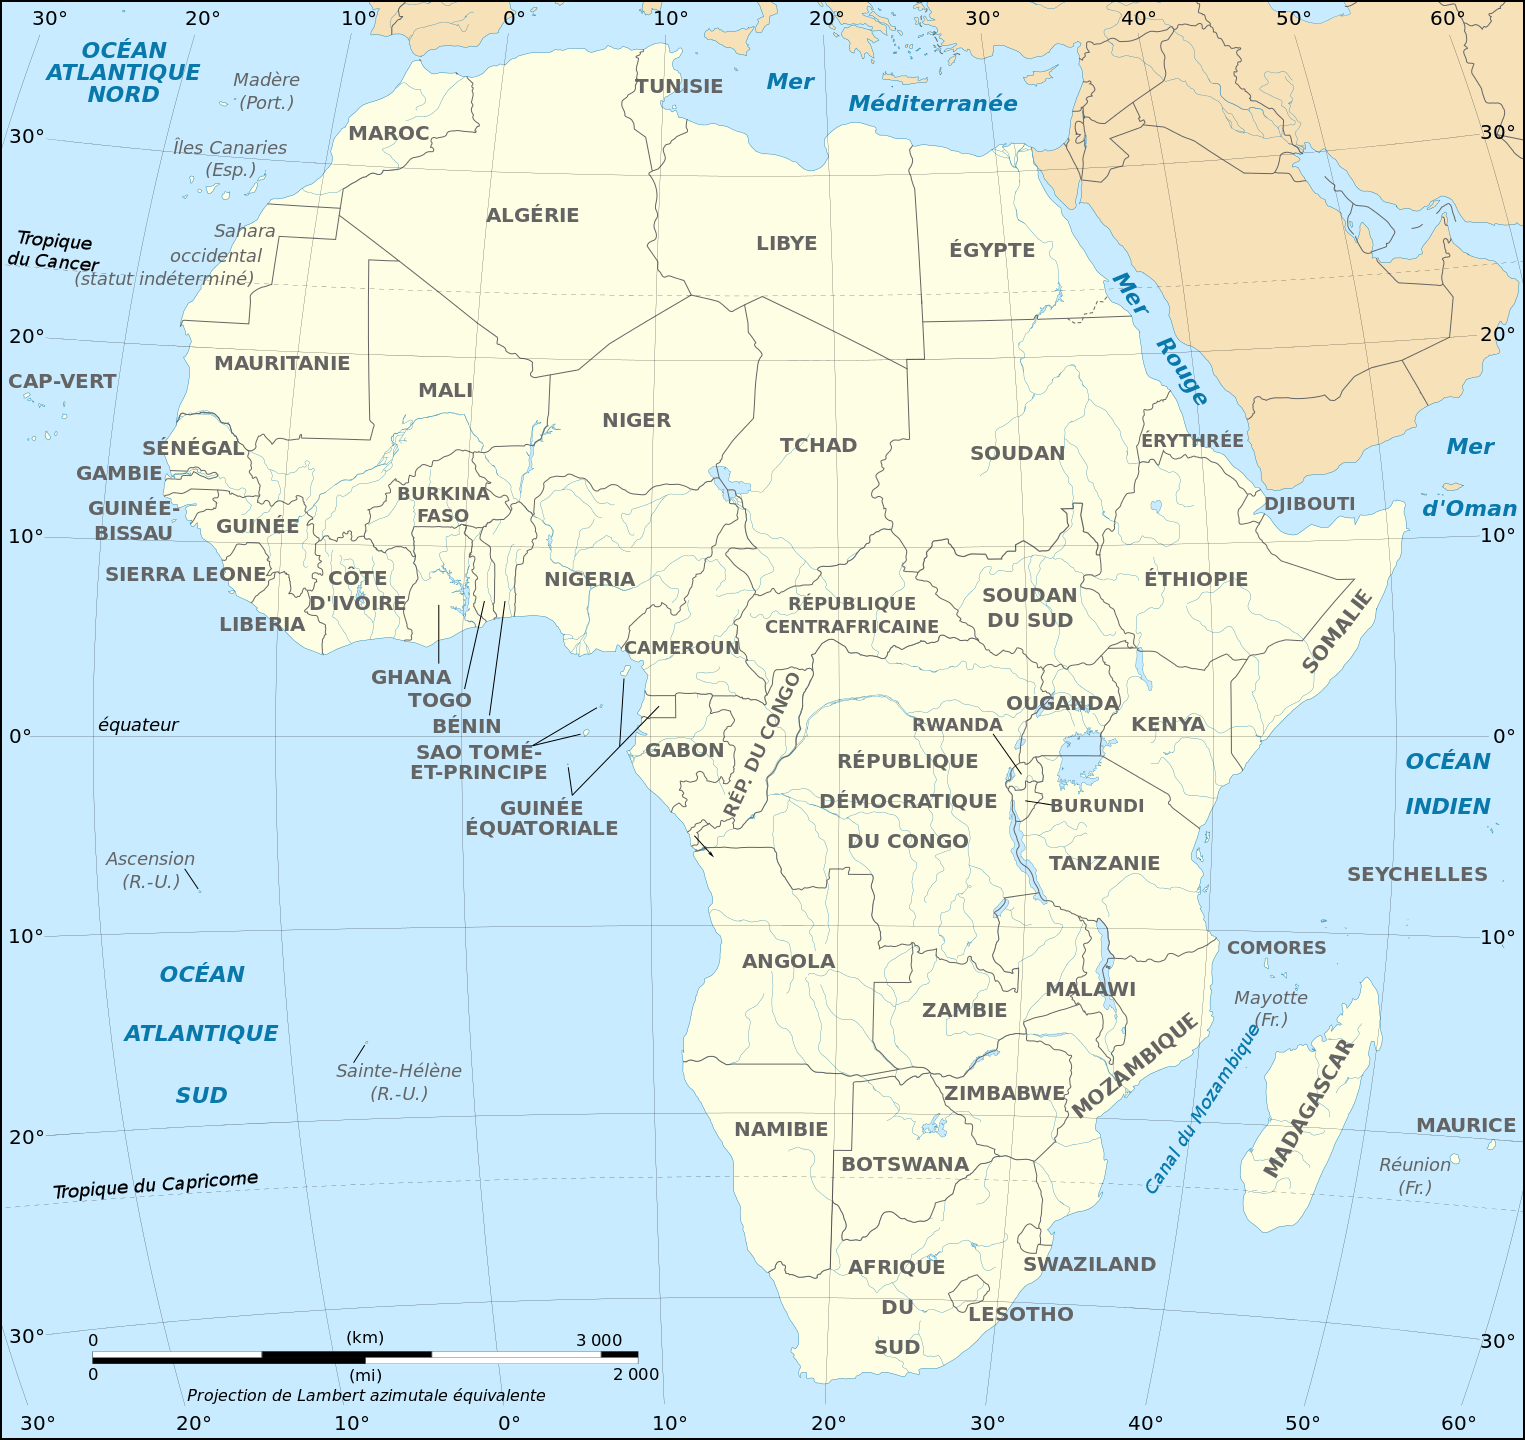 Panafricains 2 du 19 novembre : 2 parties (3mn/coup) jouées simultanément par des scrabbleurs de toute la Francophonie